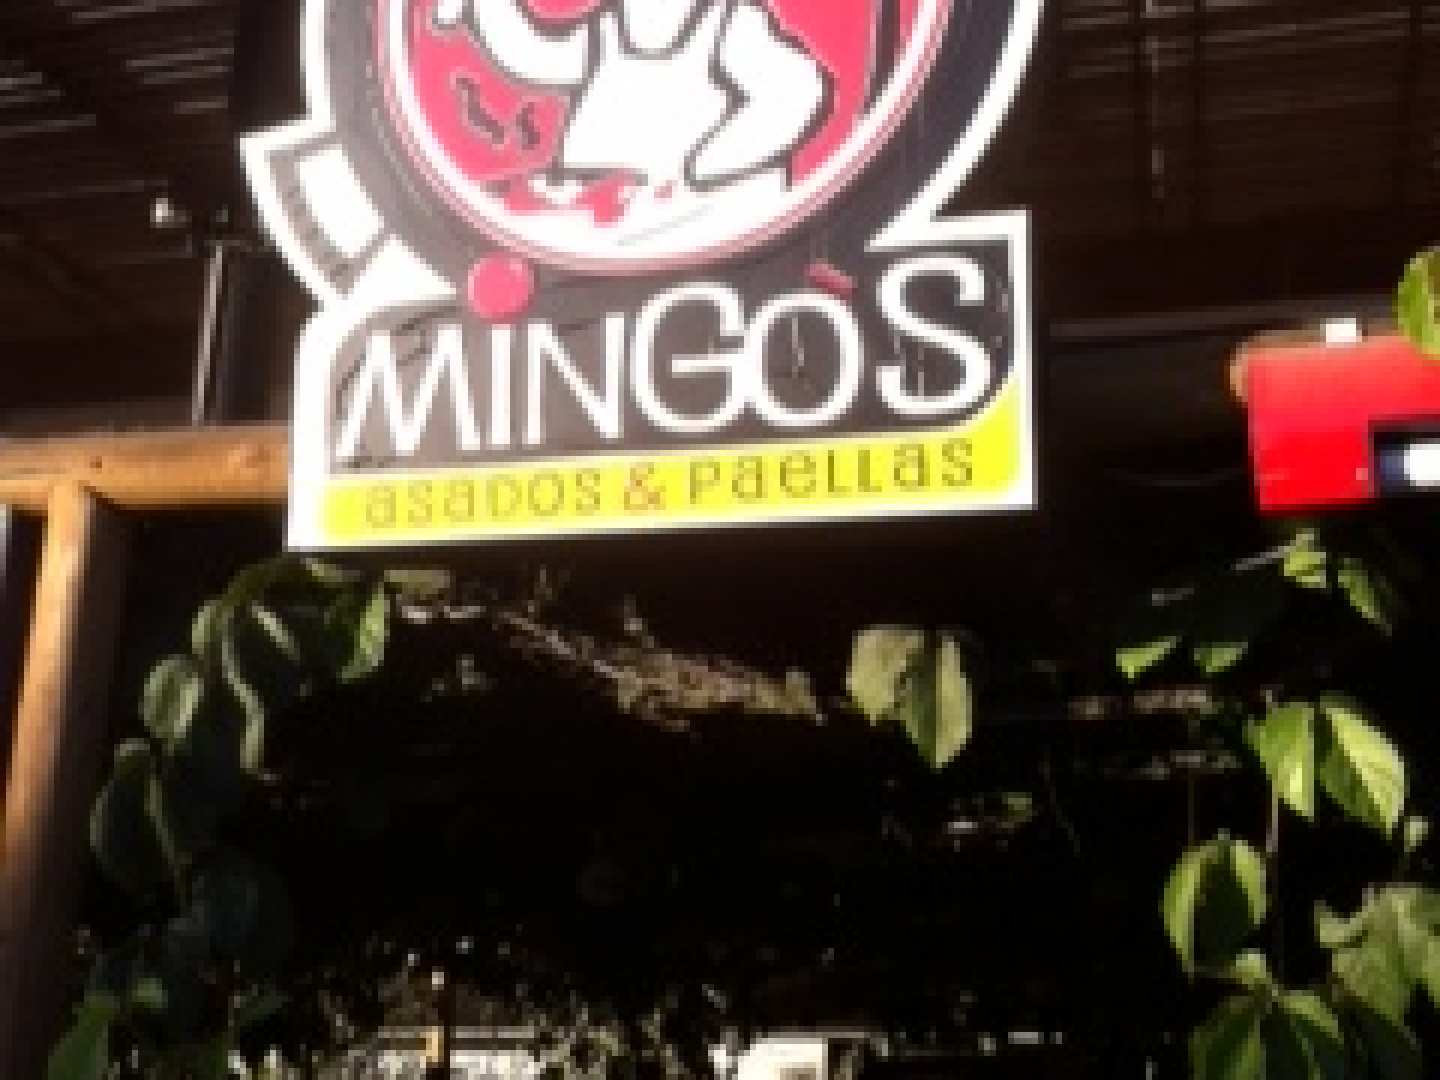 Mingo’s